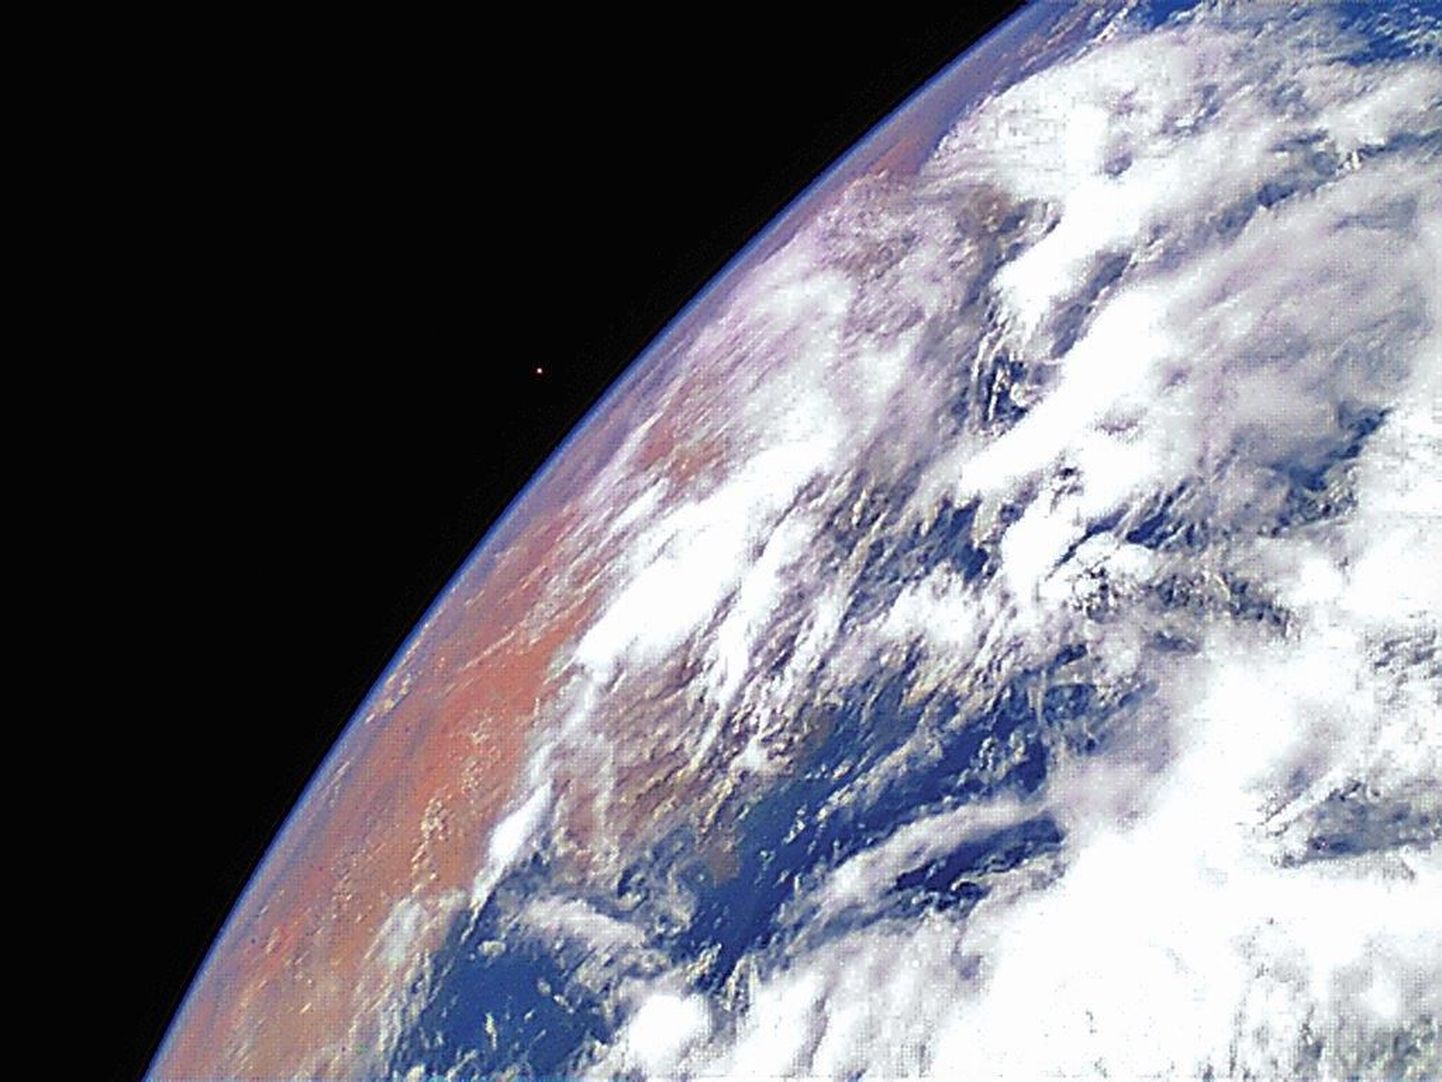 Первое фото спутника EstCube-1 с орбиты